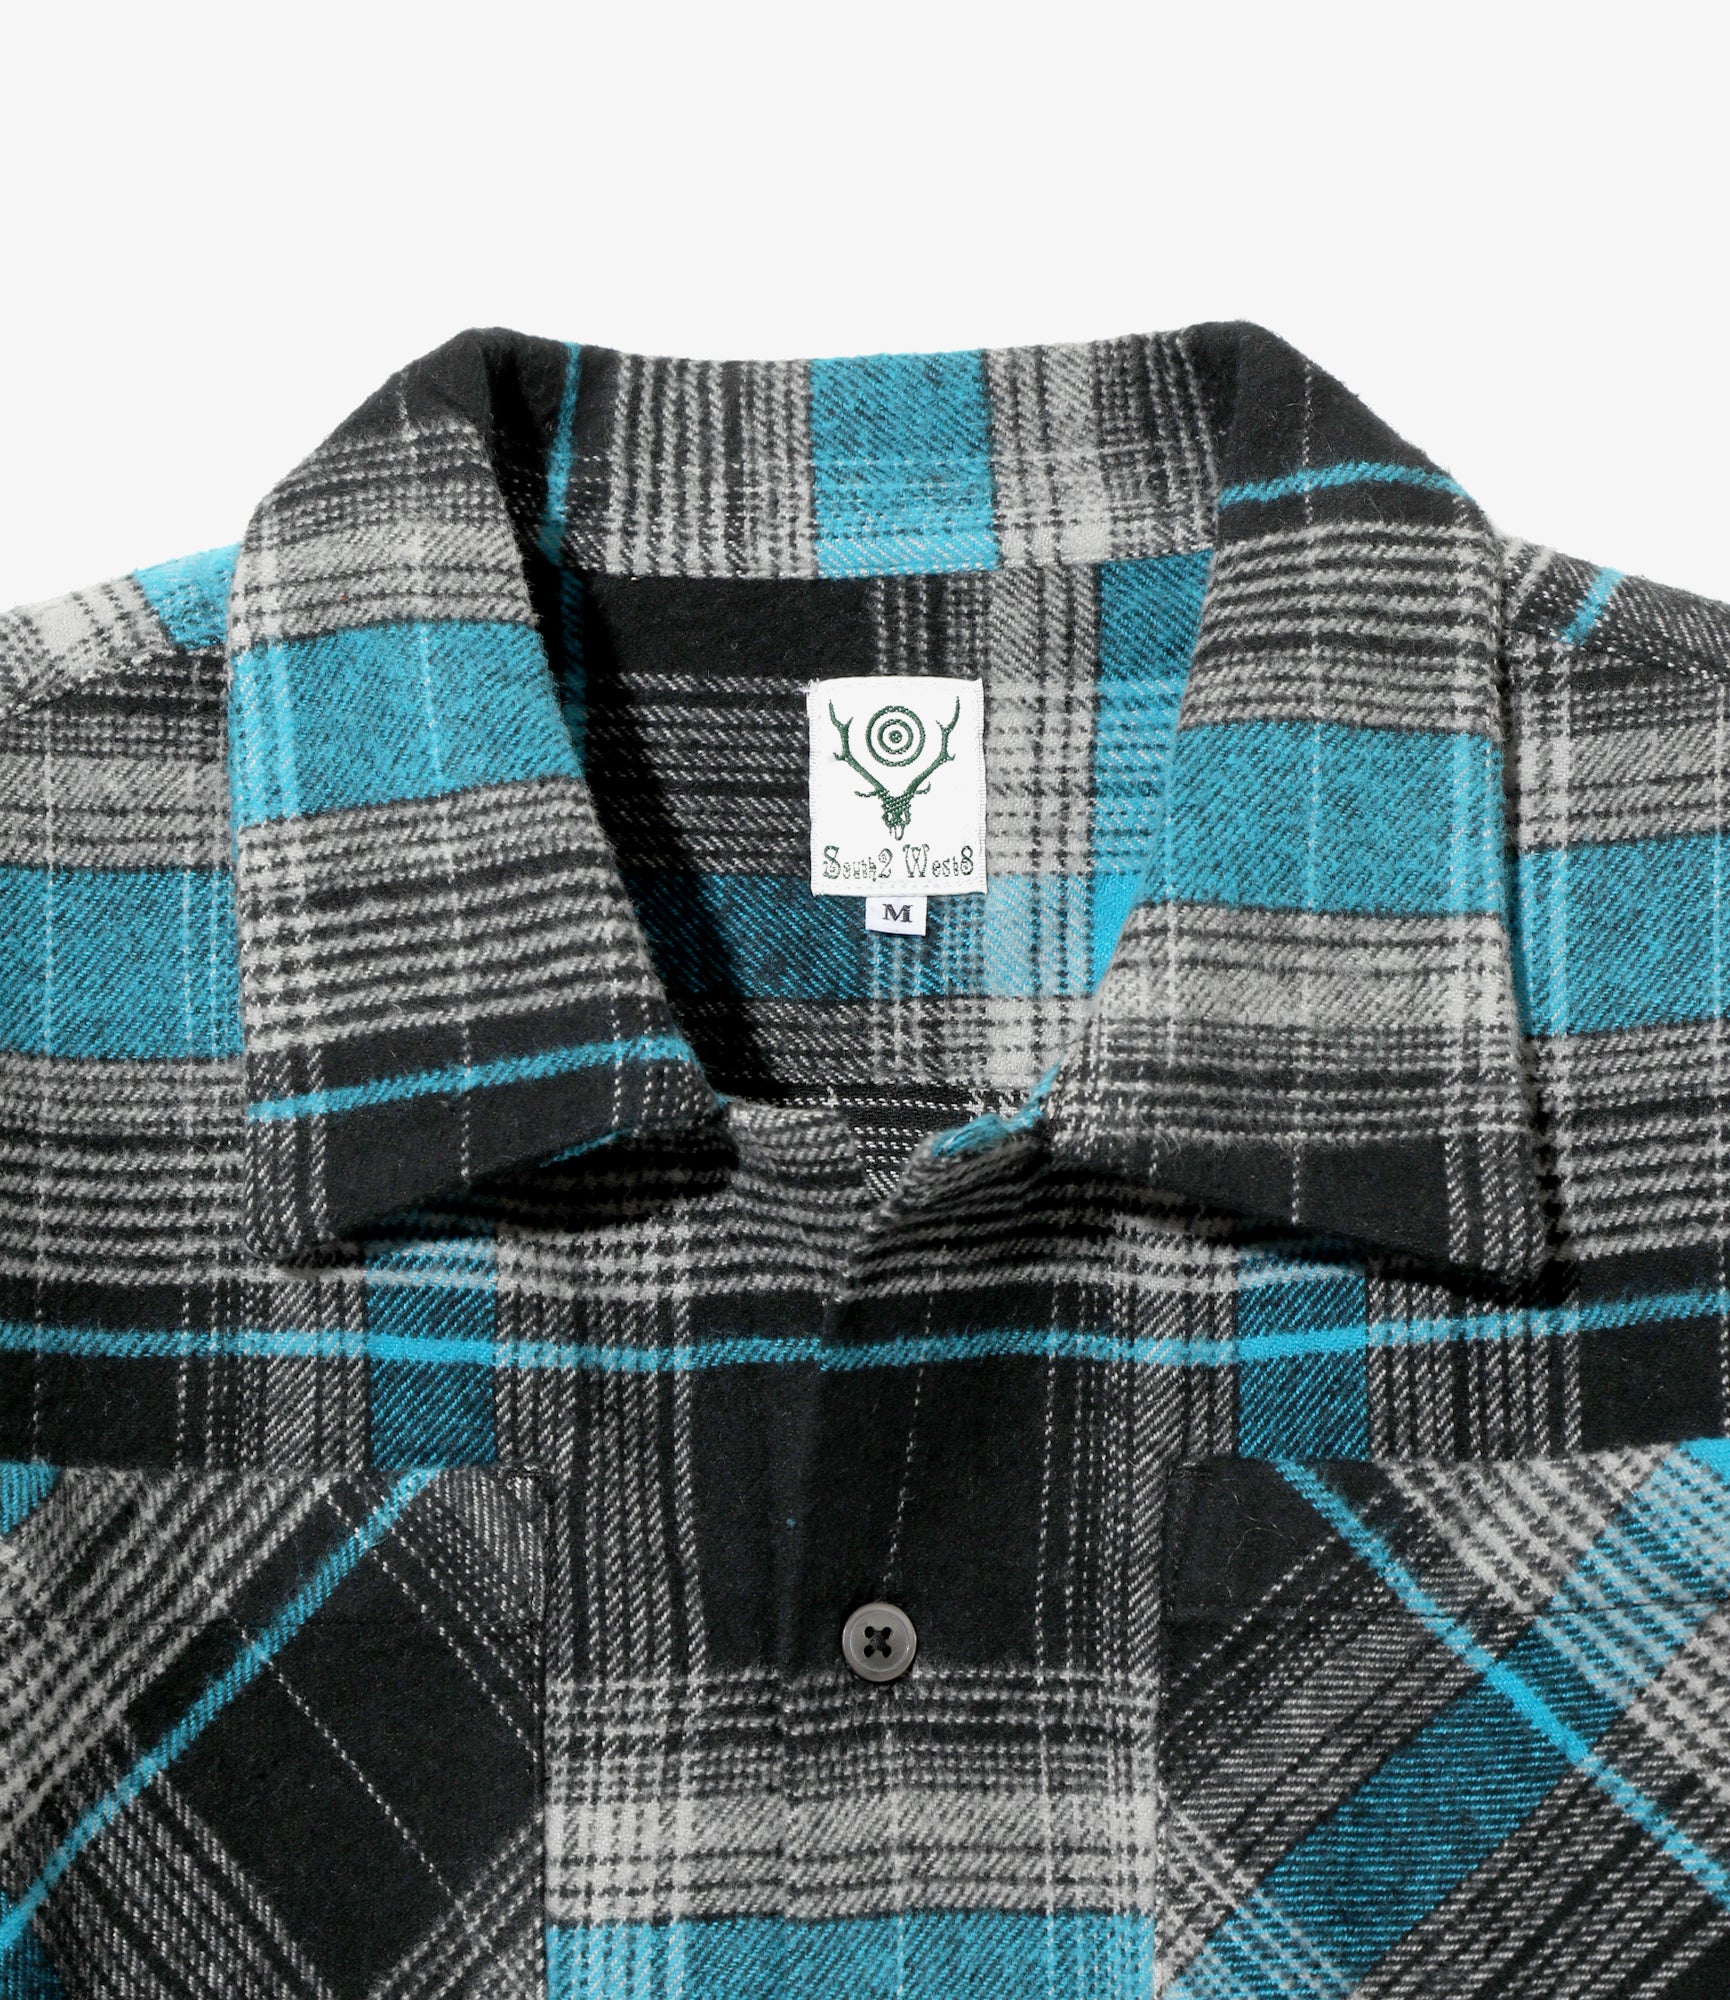 South2 West8 6 Pocket Shirt - Flannel Twill / Plaid - Lt. Blue/Grey